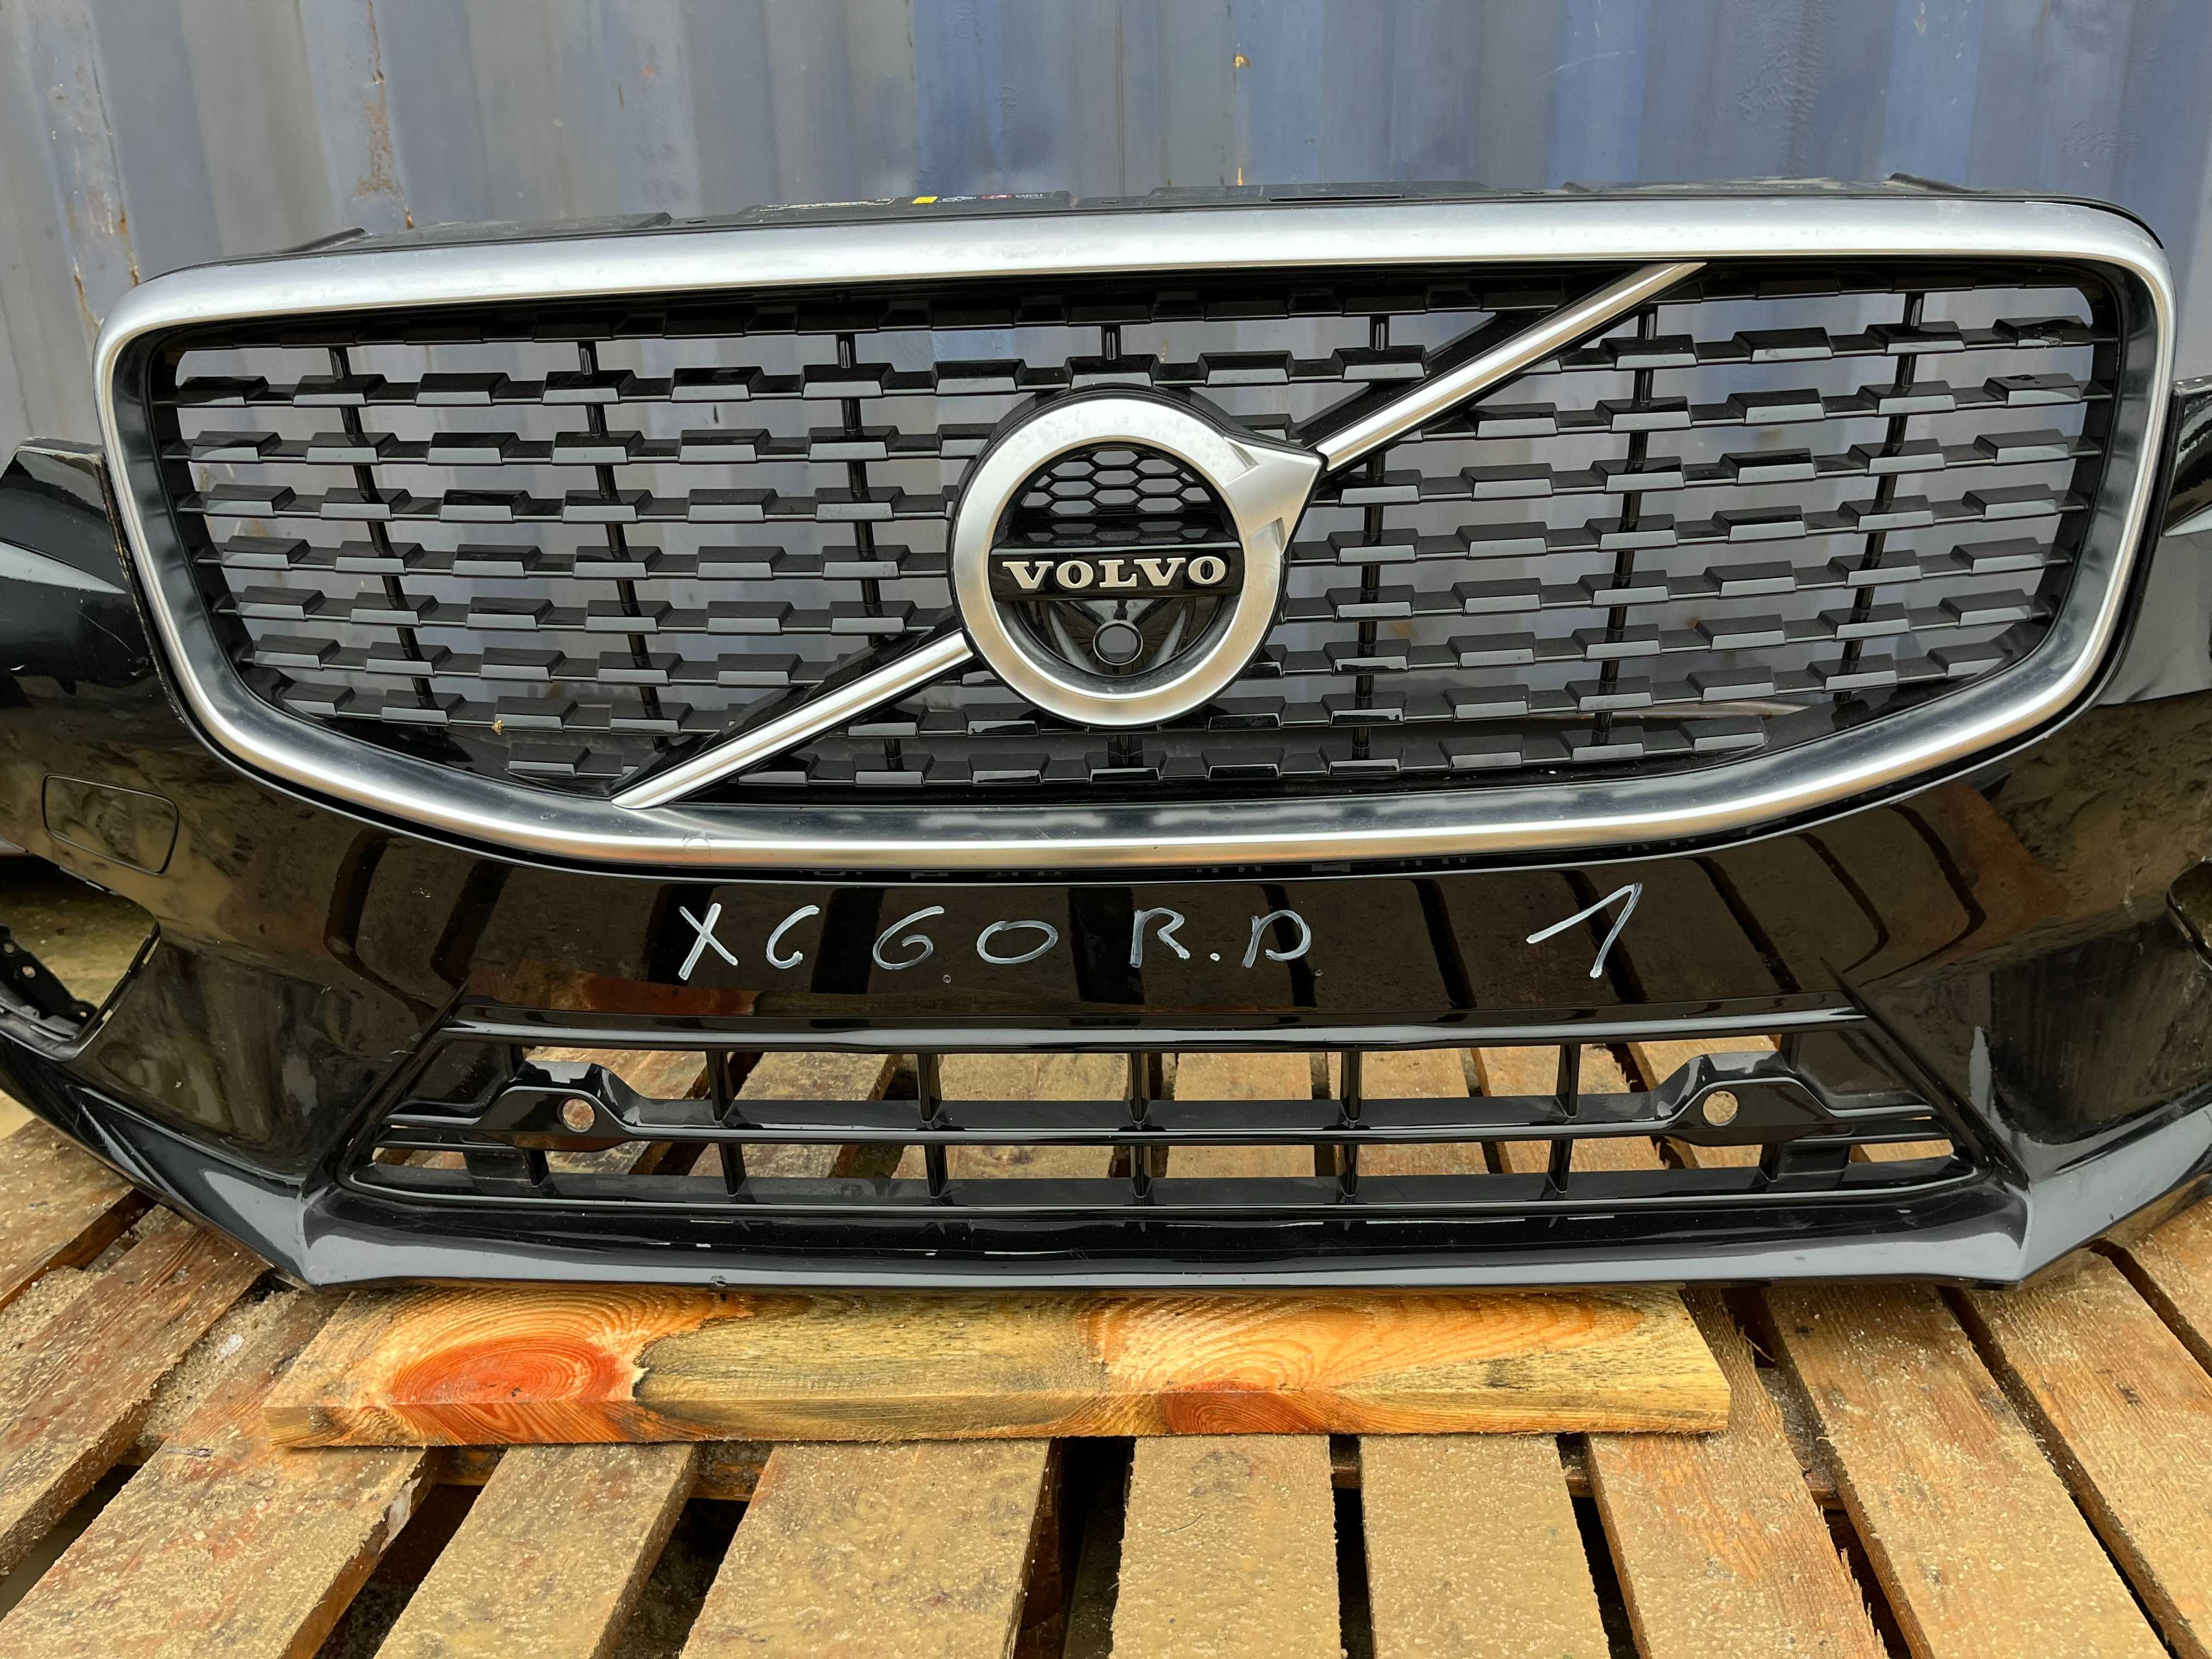 Volvo xc60 r-design zderzak, skorupa, kompletny, pdc, różne rodzaje